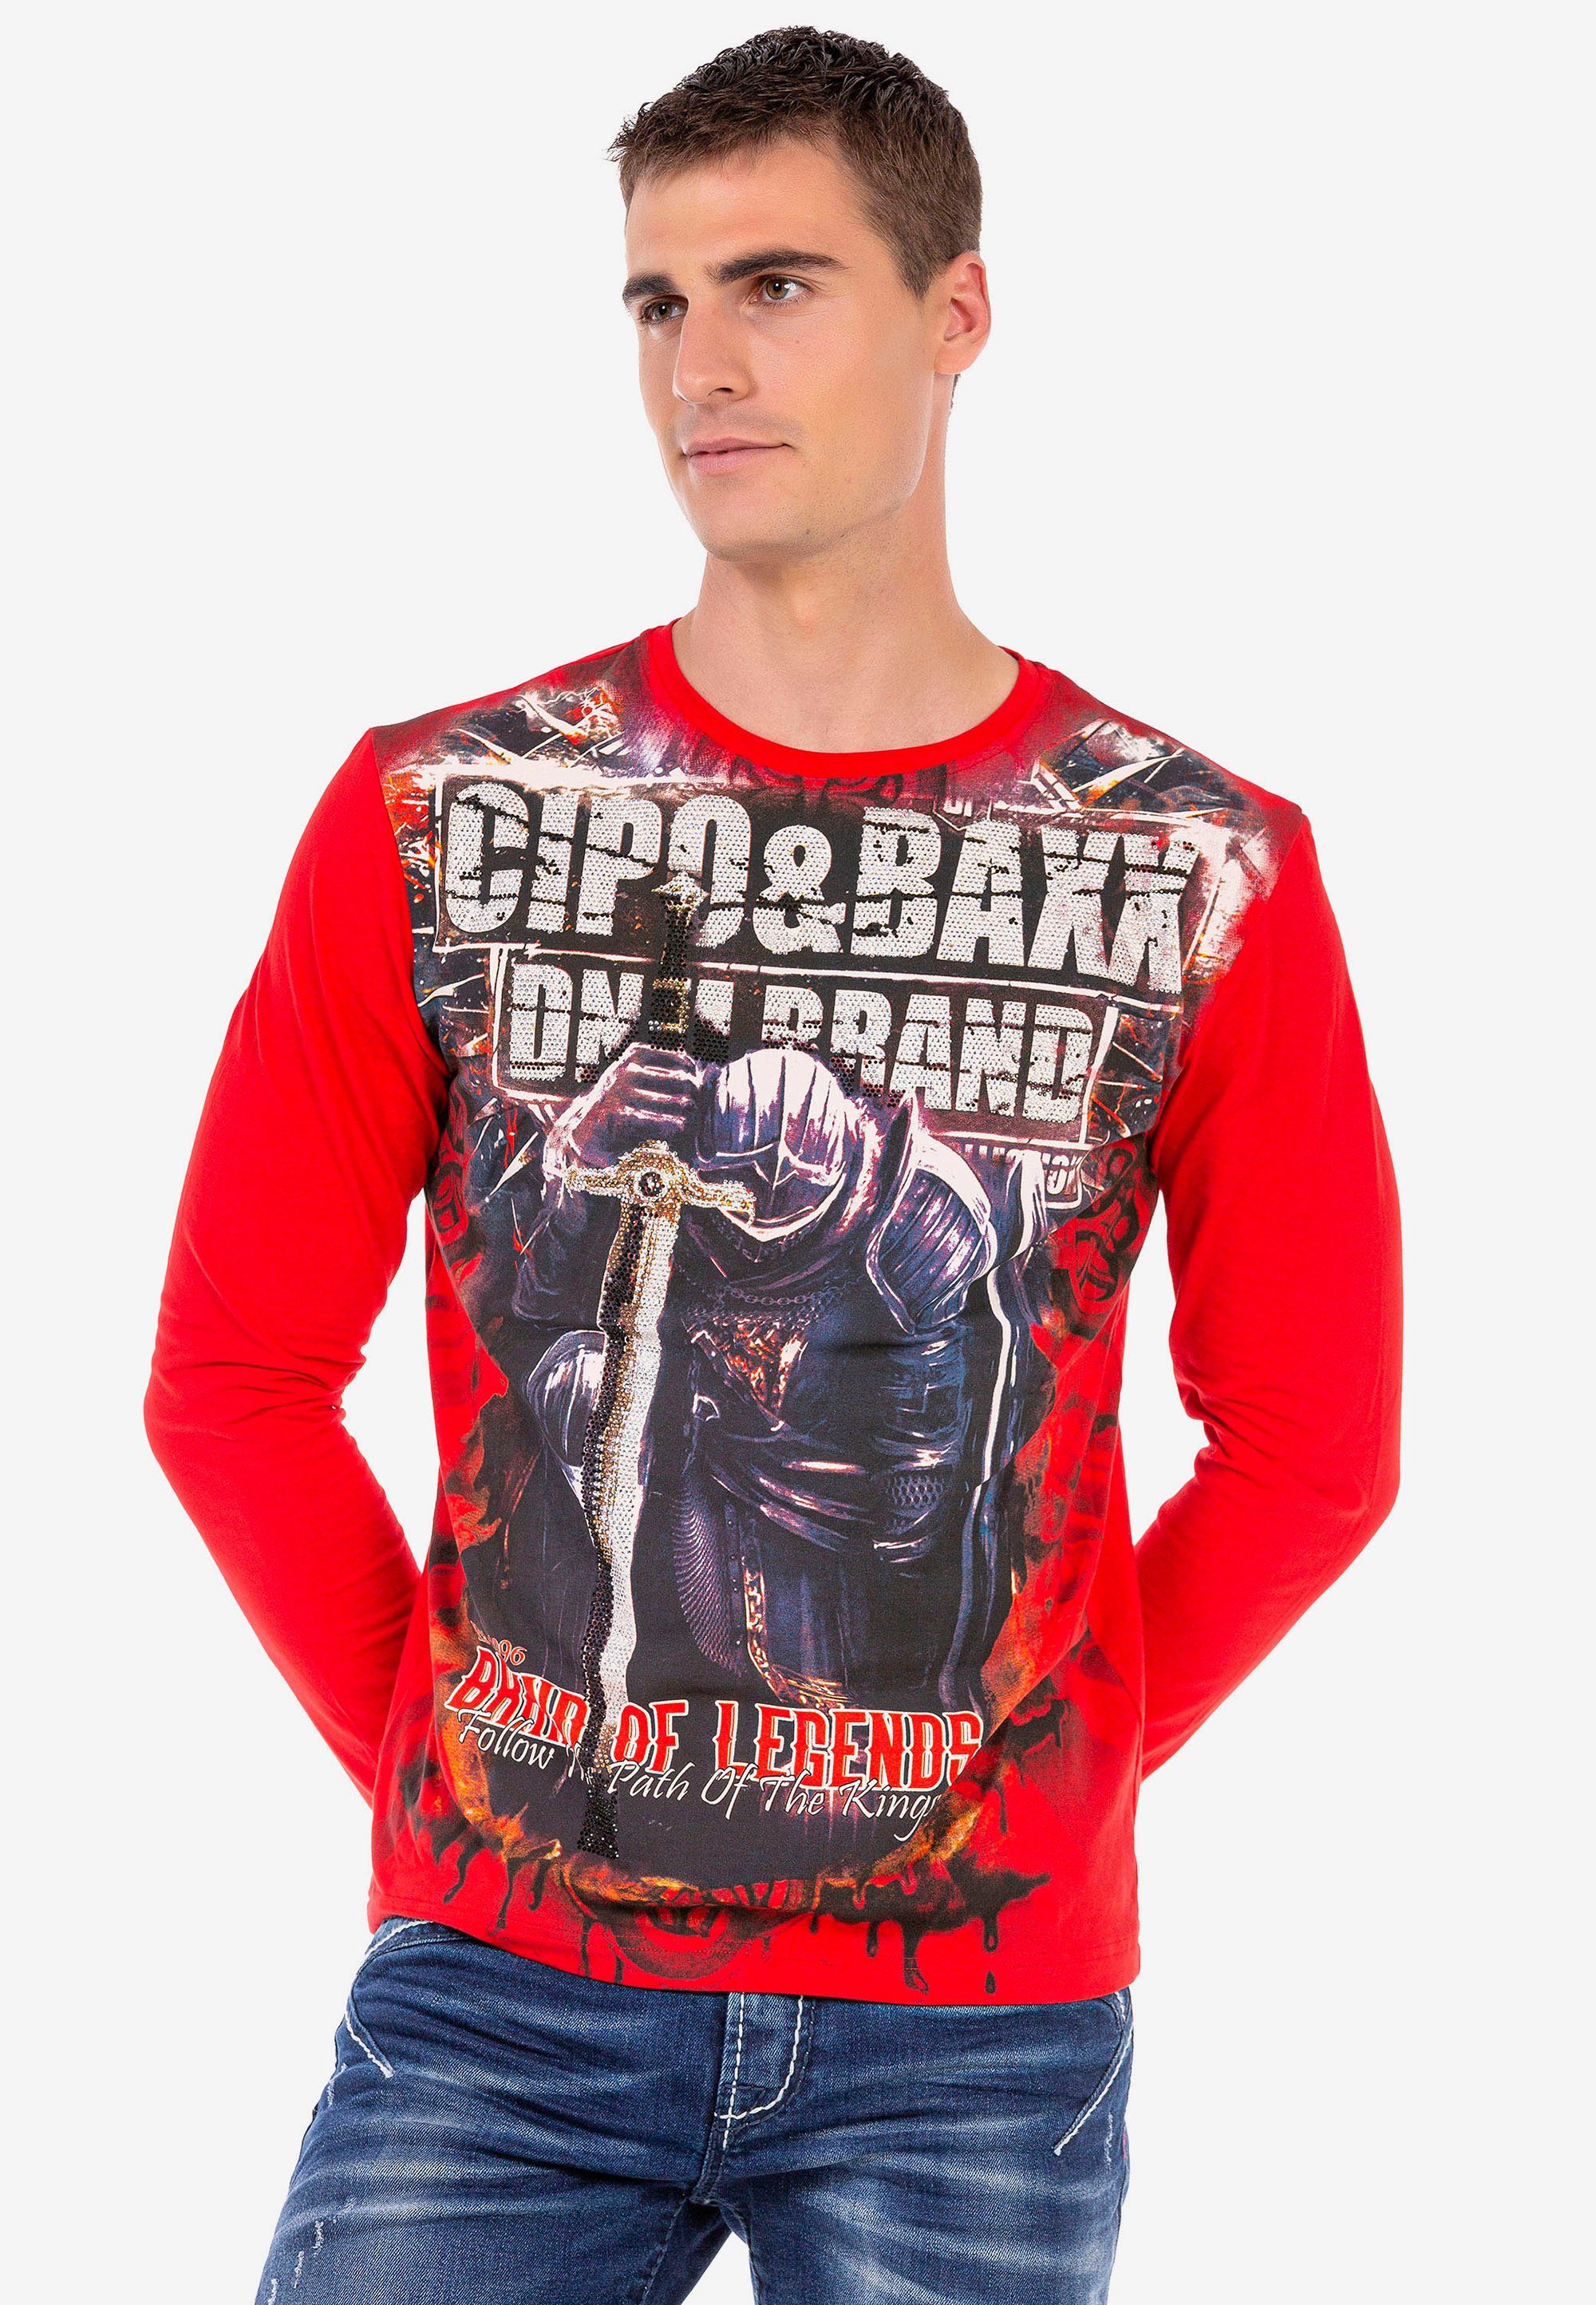 Cipo & Baxx Langarmshirt in coolem Look rot-schwarz